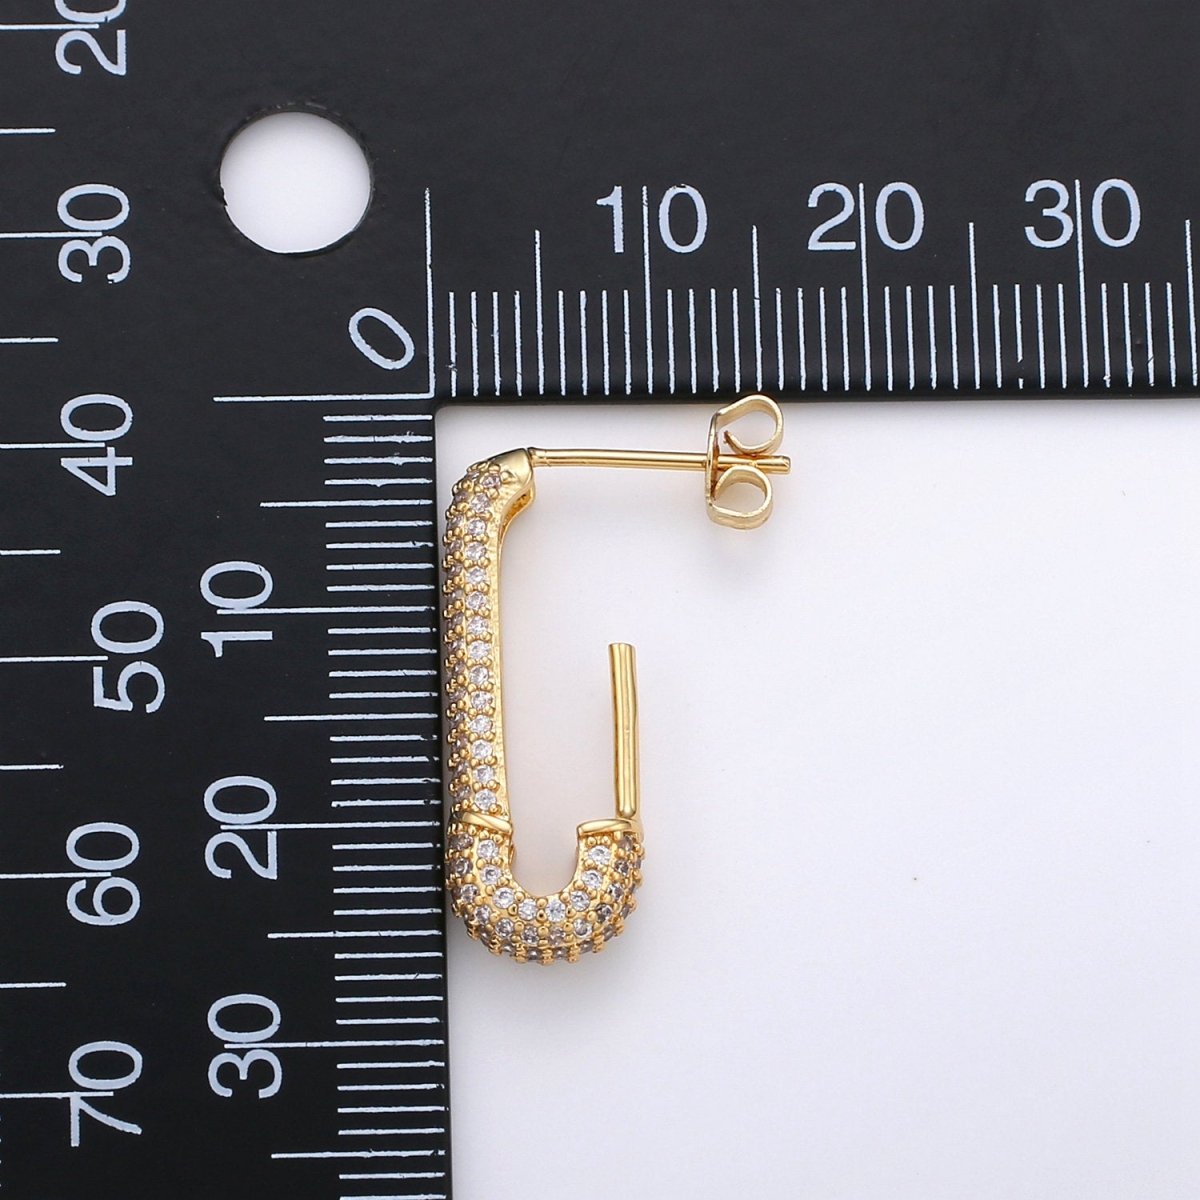 Dainty Gold Stud Earring Dangle Hoop Earrings, Micro Pave Statement Earrings, Minimalist Earrings CZ Cubic Simple earring Gift for Her K-623 - DLUXCA